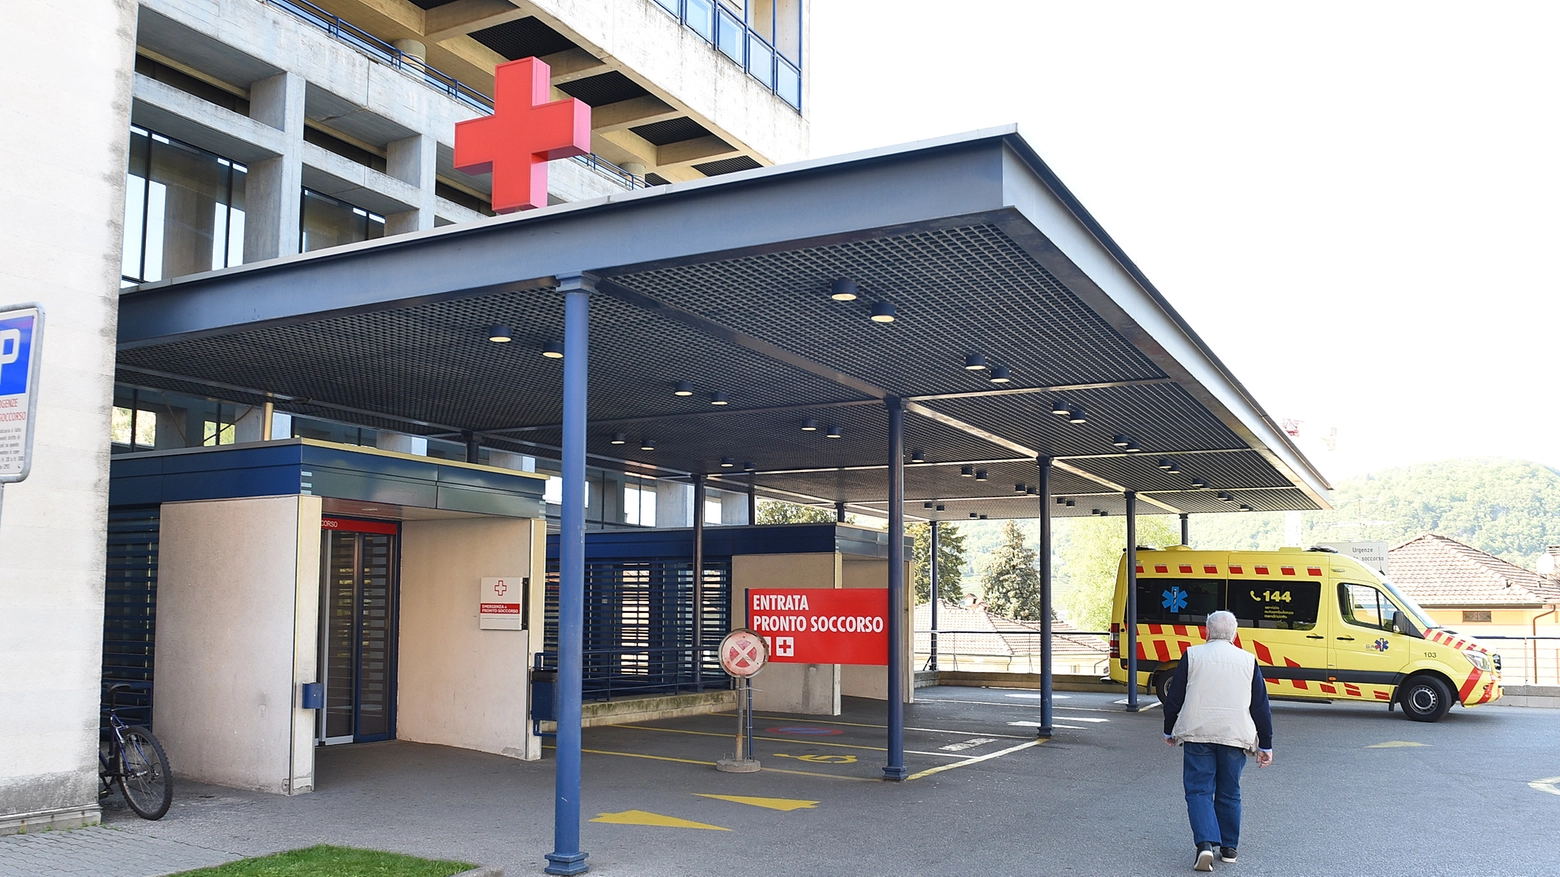 Il comasco è stato ricoverato in un ospedale svizzero